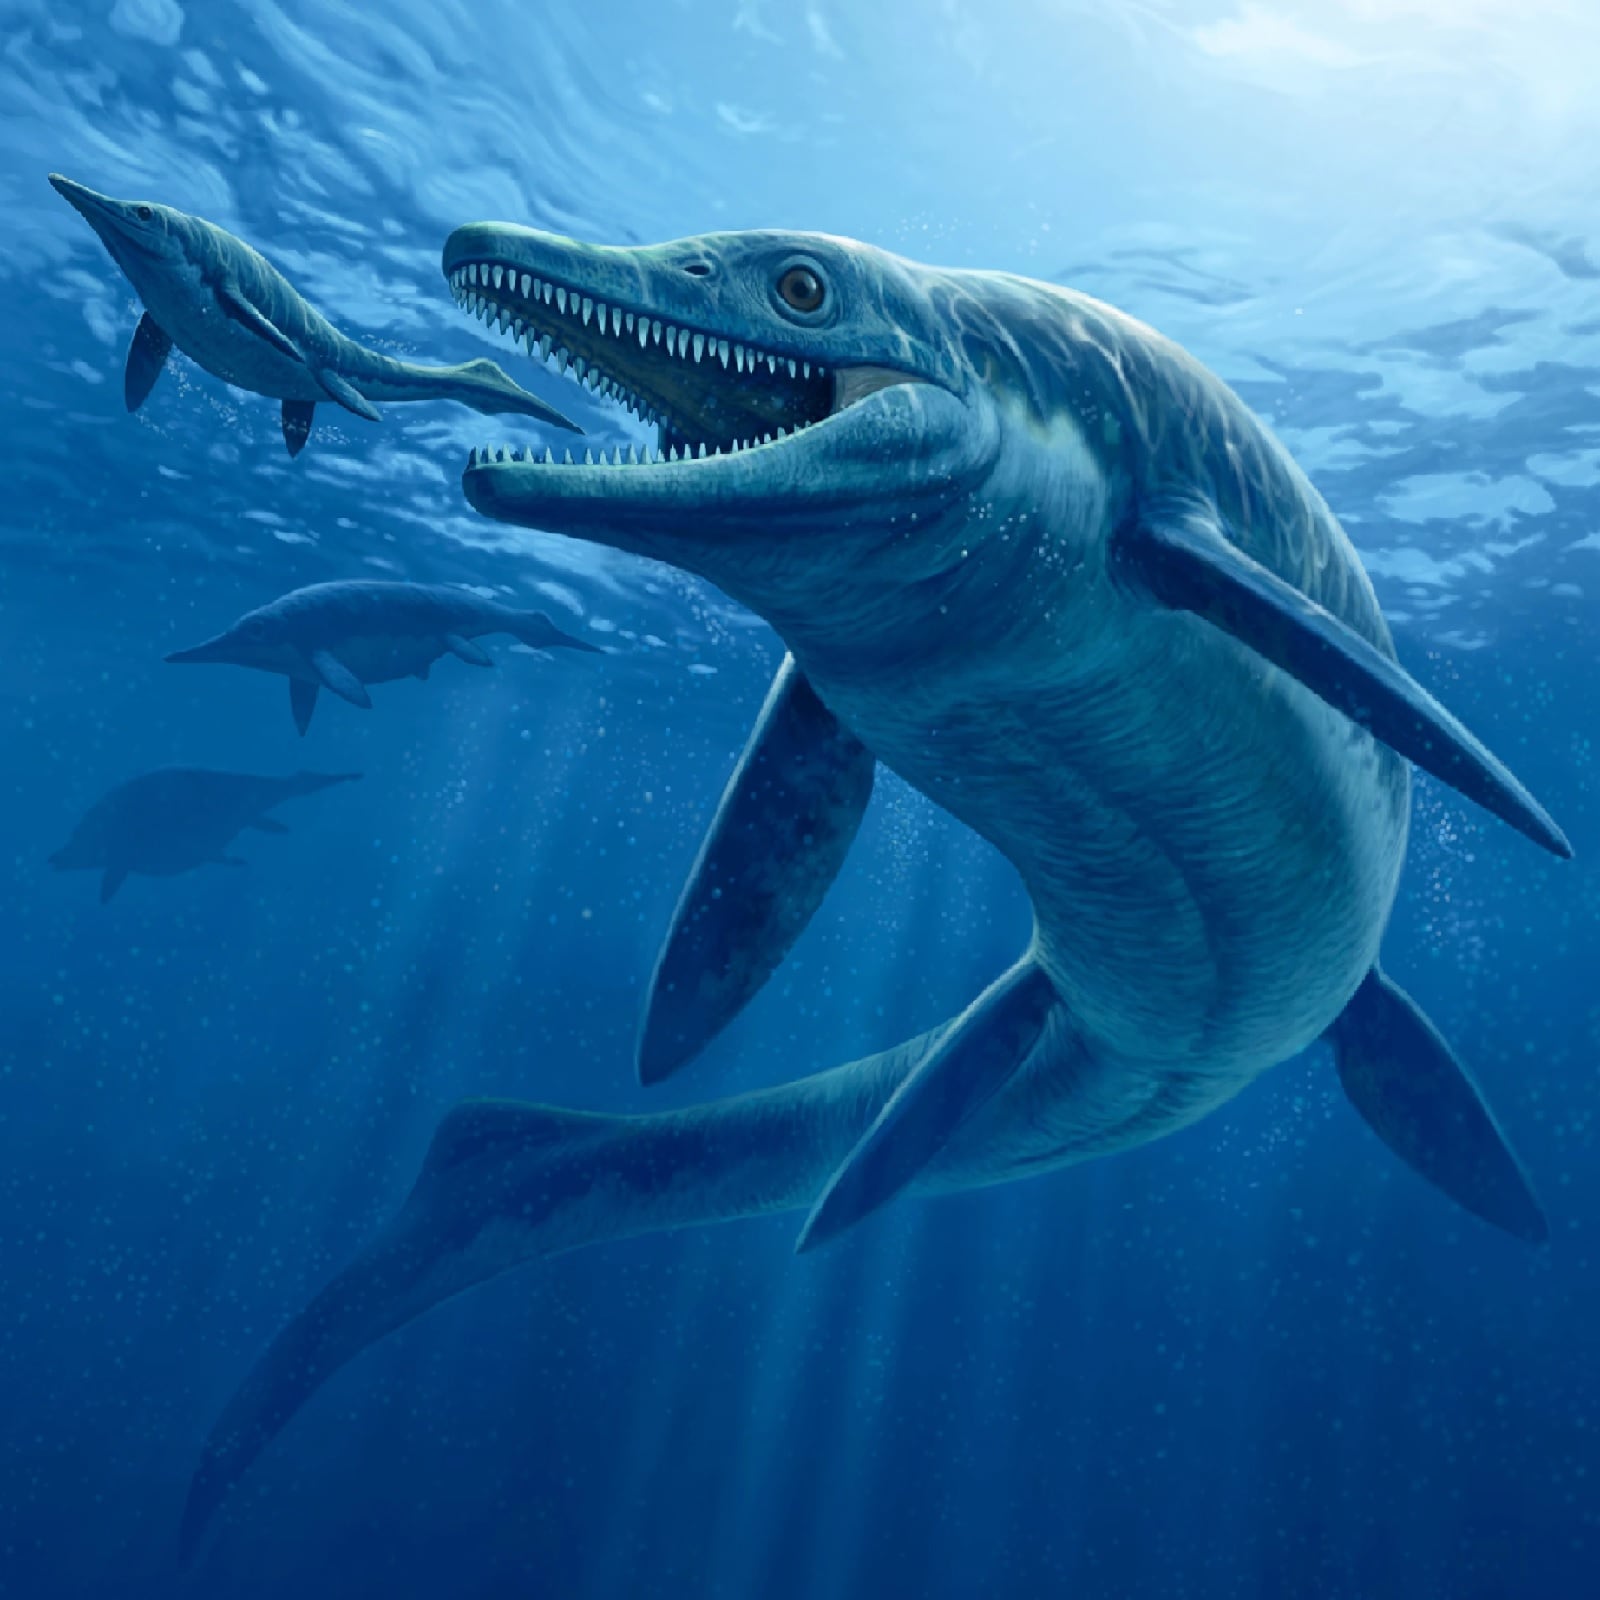   अमेरिका में वैज्ञानिकों की एक टीम ने डायनासोर के समय के एक समुद्री राक्षस (Sea Monster) की खोज की है. इस जीव की लंबाई 55 फीट तक देखी गई है. इस जीव के सिर का आकार 6.5 फीट मापा गया है. इस जीव का नाम इचिथ्योसॉर (ichthyosaur) है, जो समुद्री मछली का ही एक प्रकार है. रिसर्च से पता चला है कि मछली के आकार के इन समुद्री सरीसृपों (Reptiles) का आकार 24 करोड़ साल पहले काफी तेजी से बढ़ा.